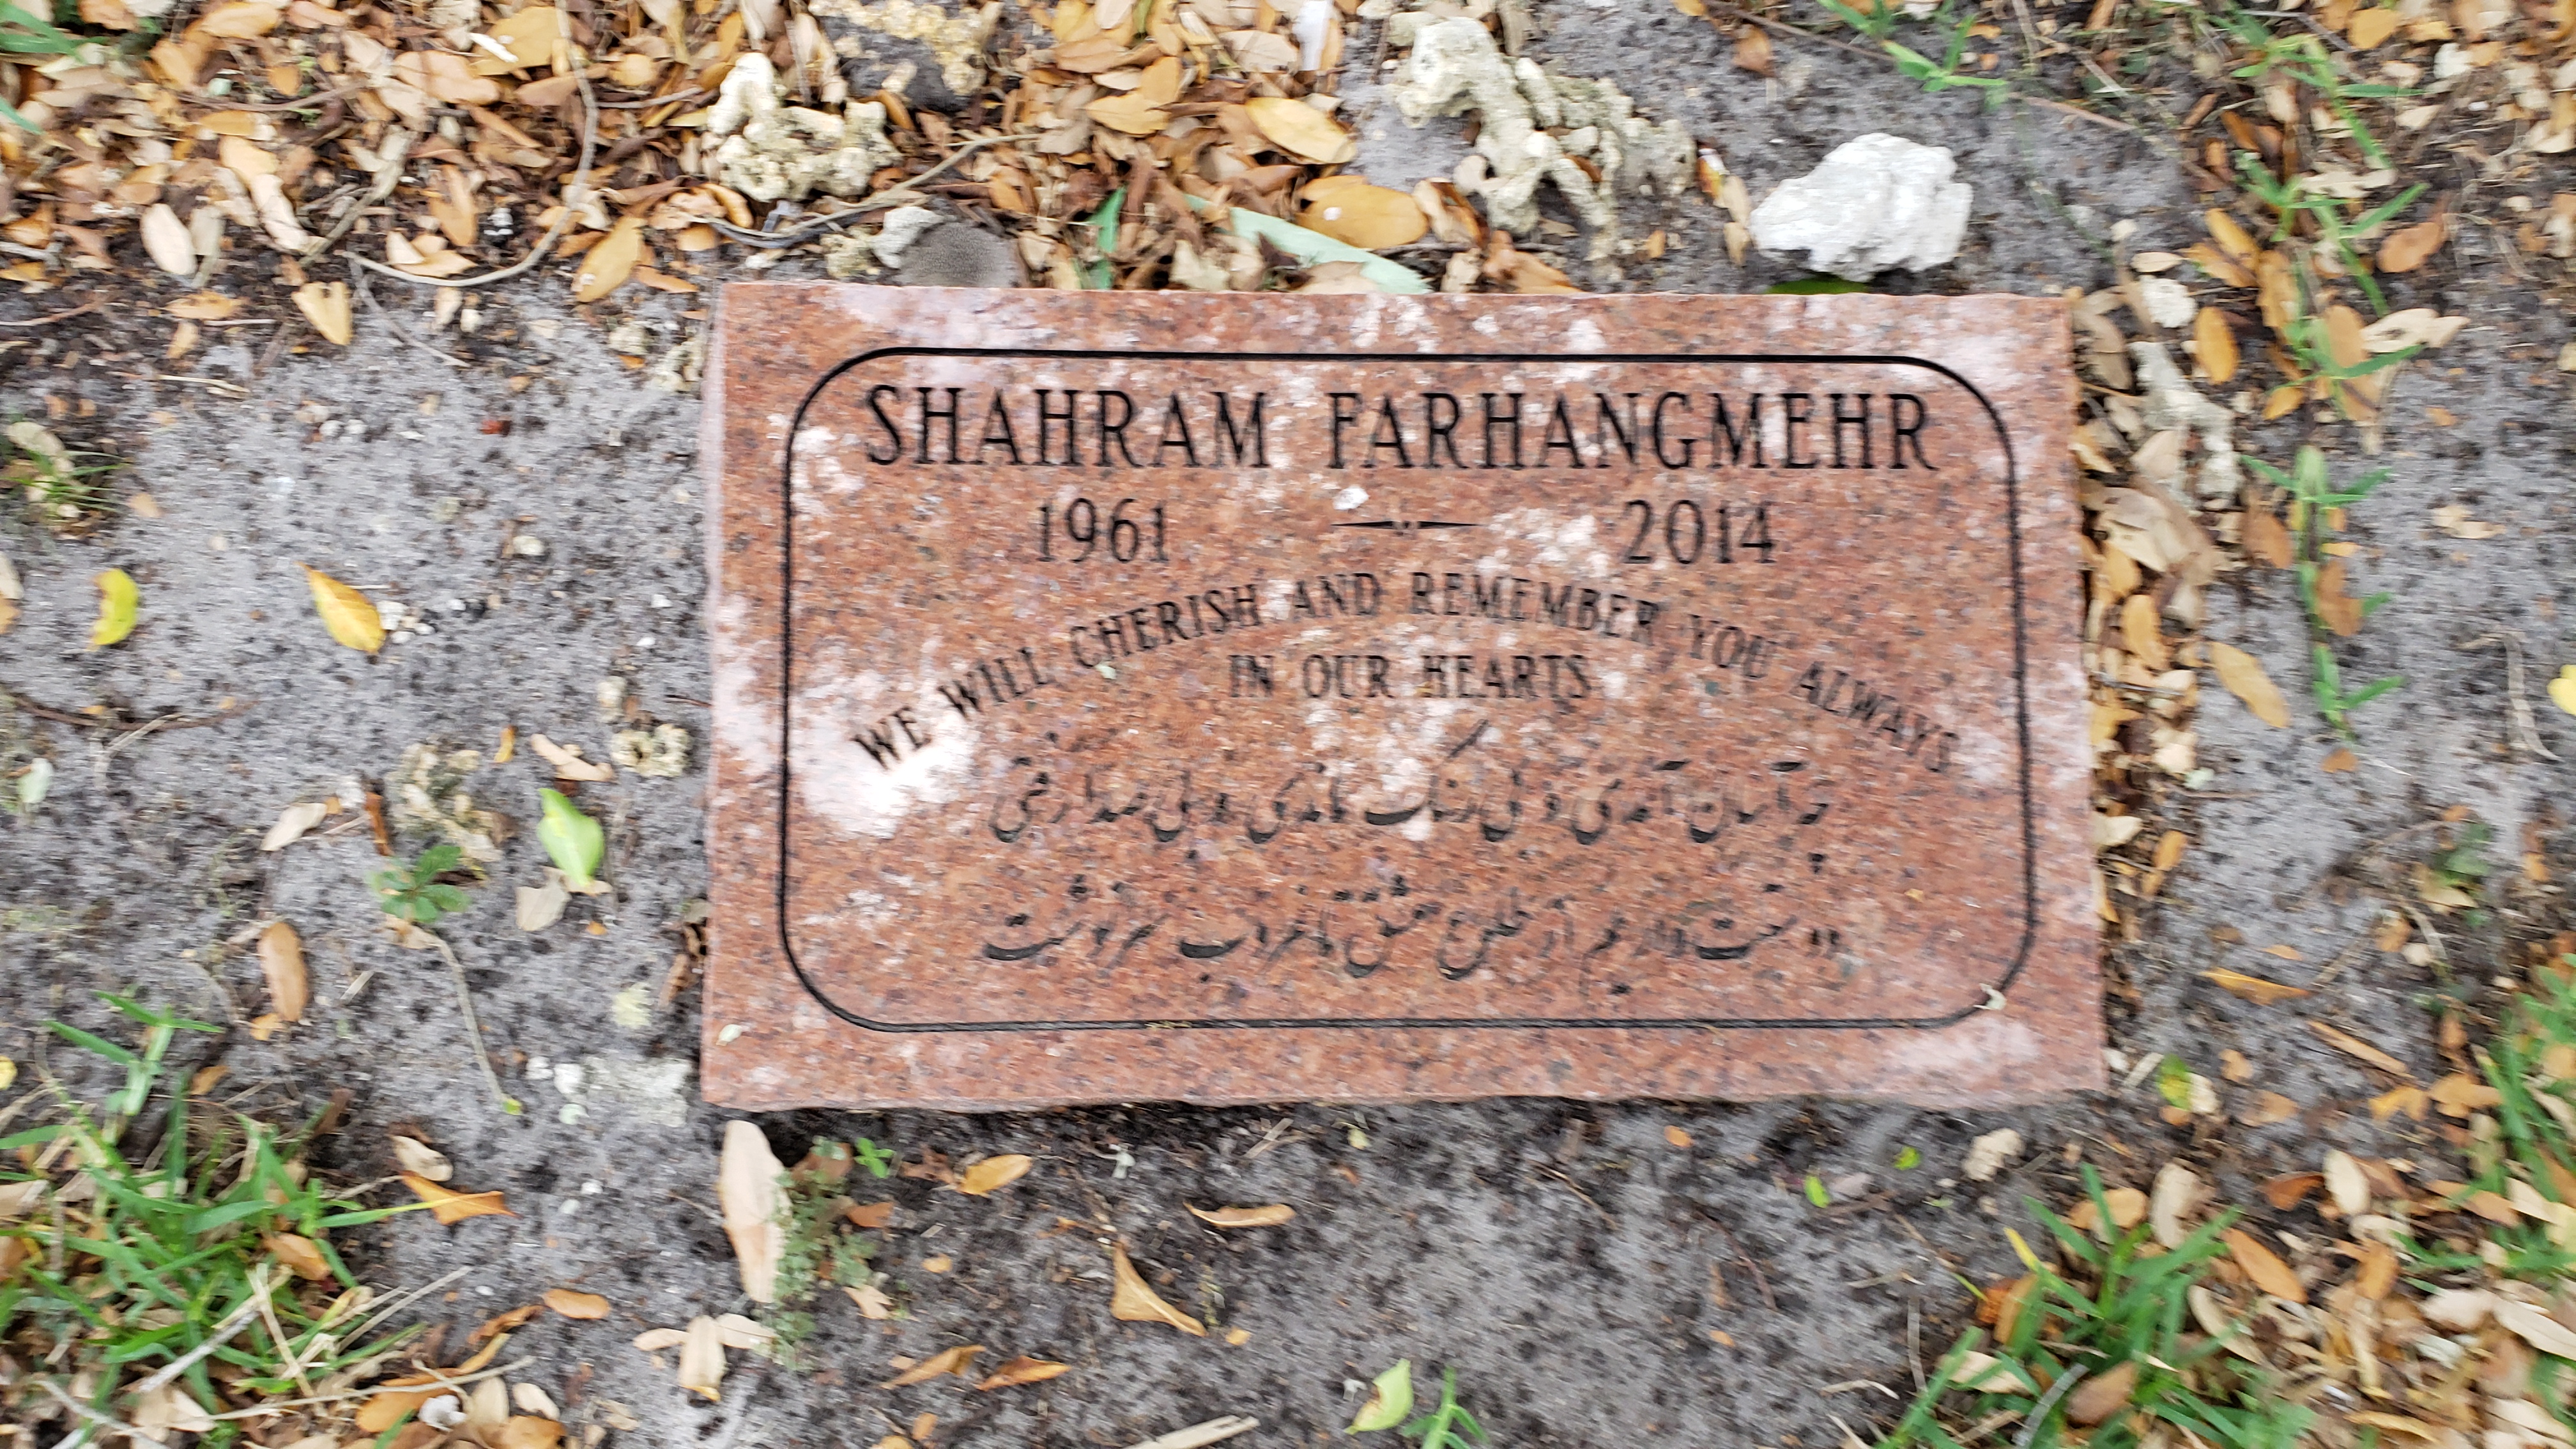 Shahram Farhangmehr